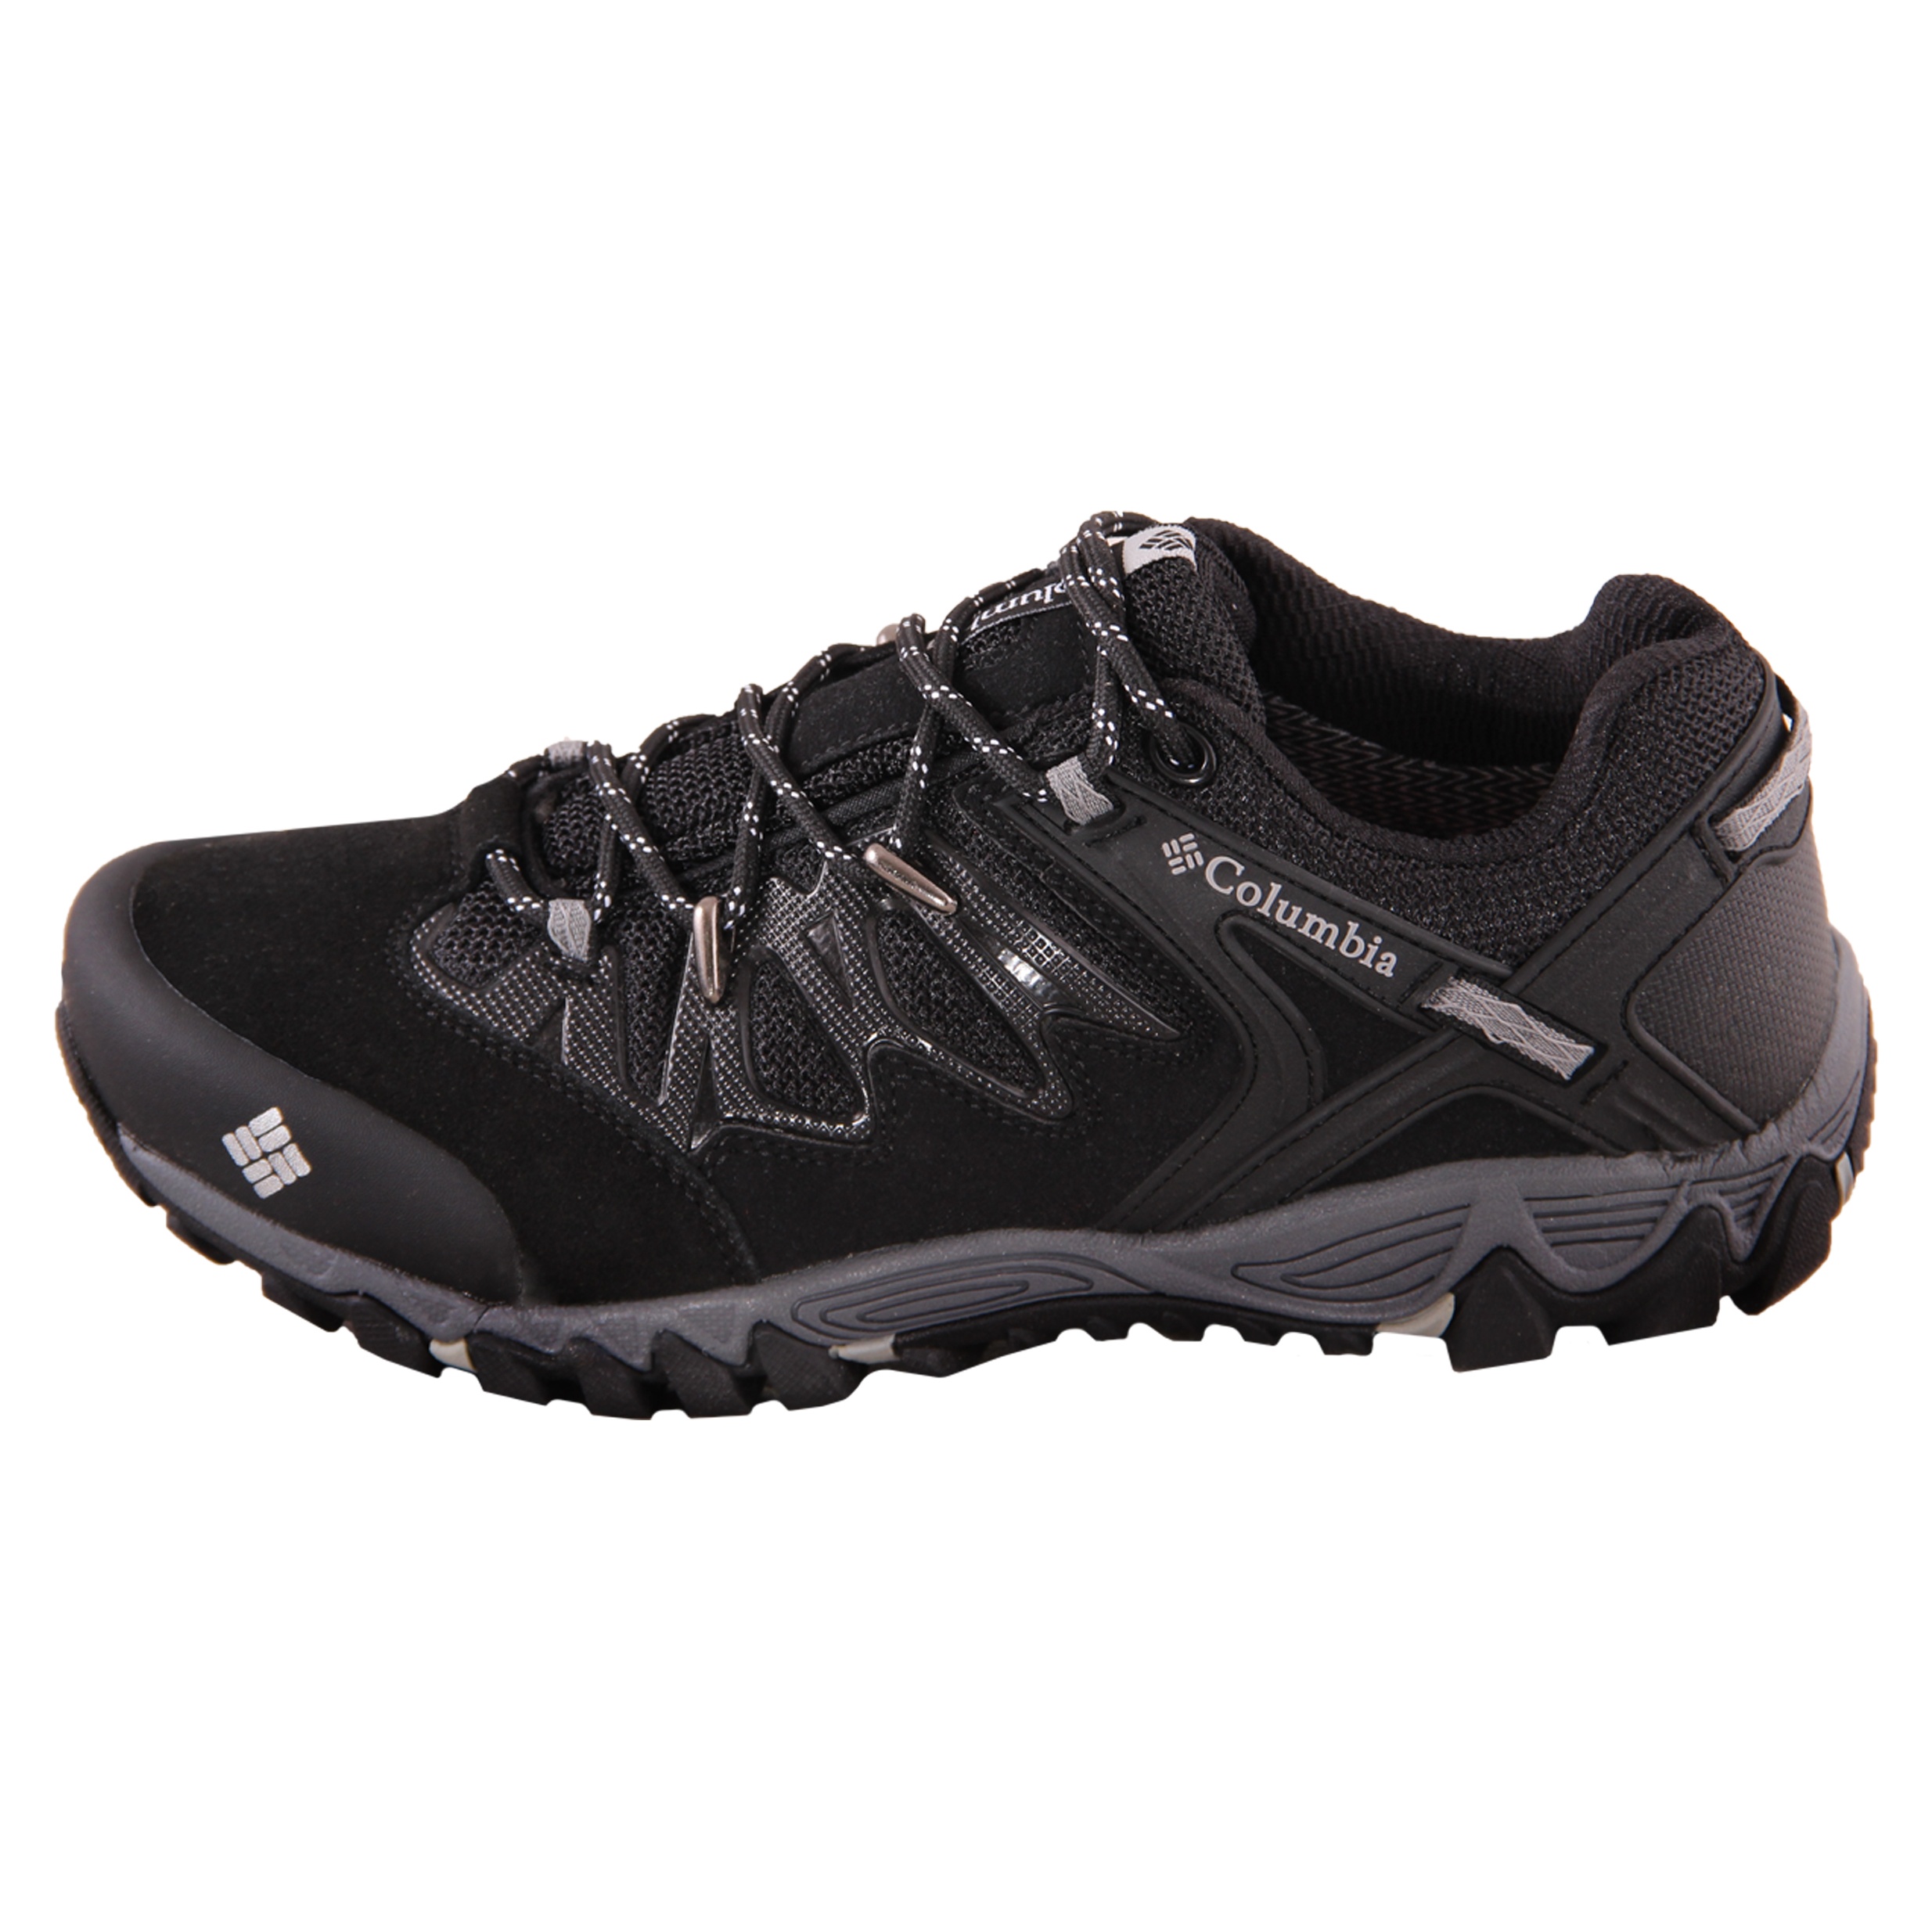 کفش کوهنوردی مردانه کد 1-9870